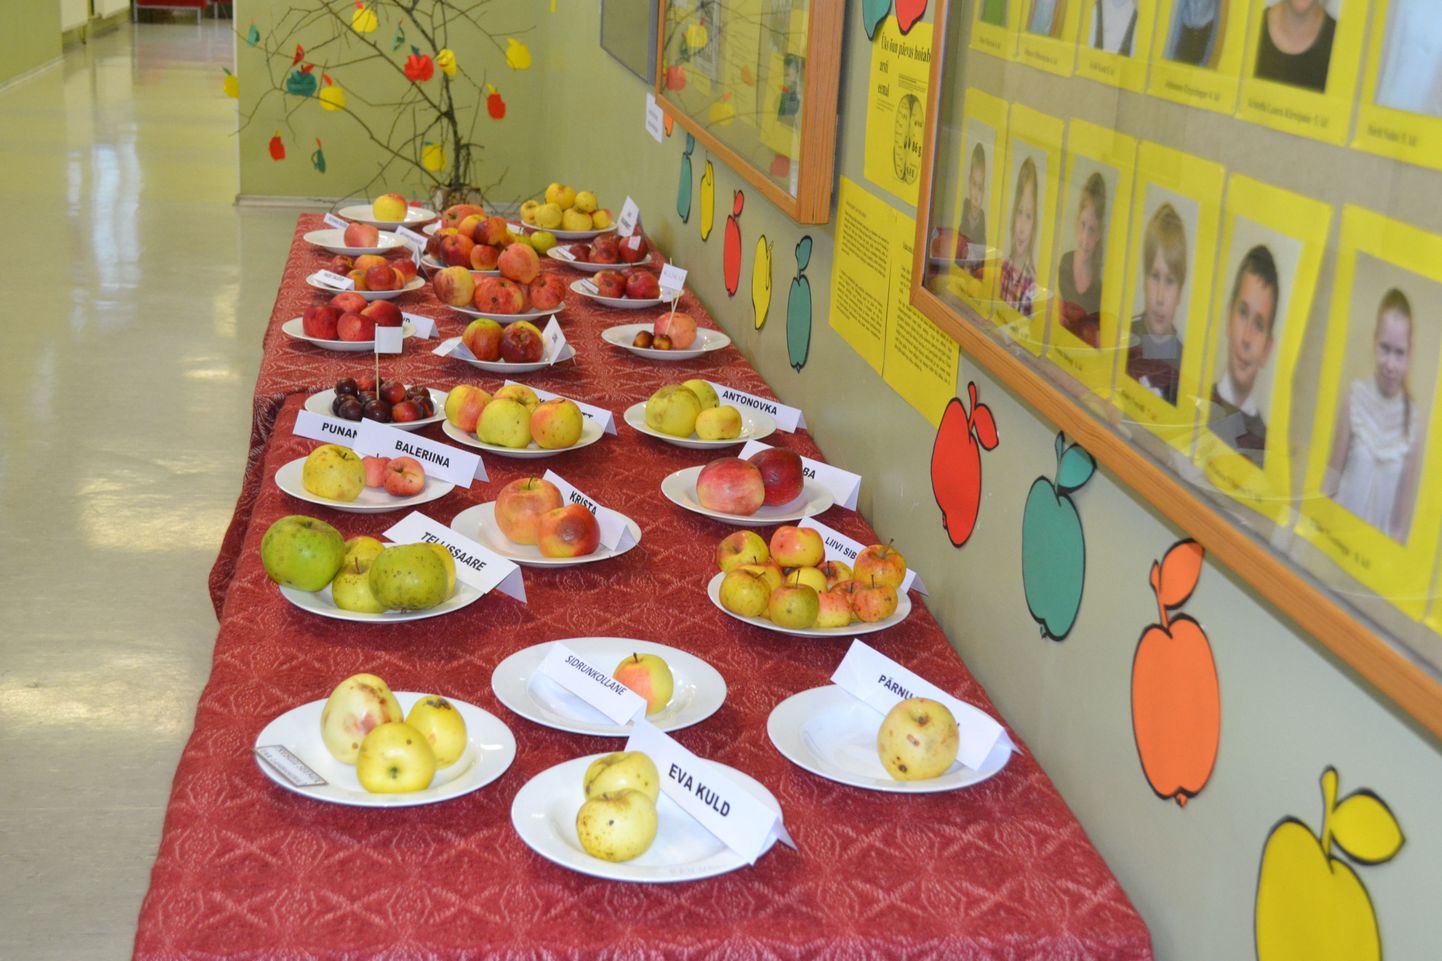 Näitus õpilaste koduaedades kasvavatest sügisõuntest juhatas sisse veerandi viimase päeva.